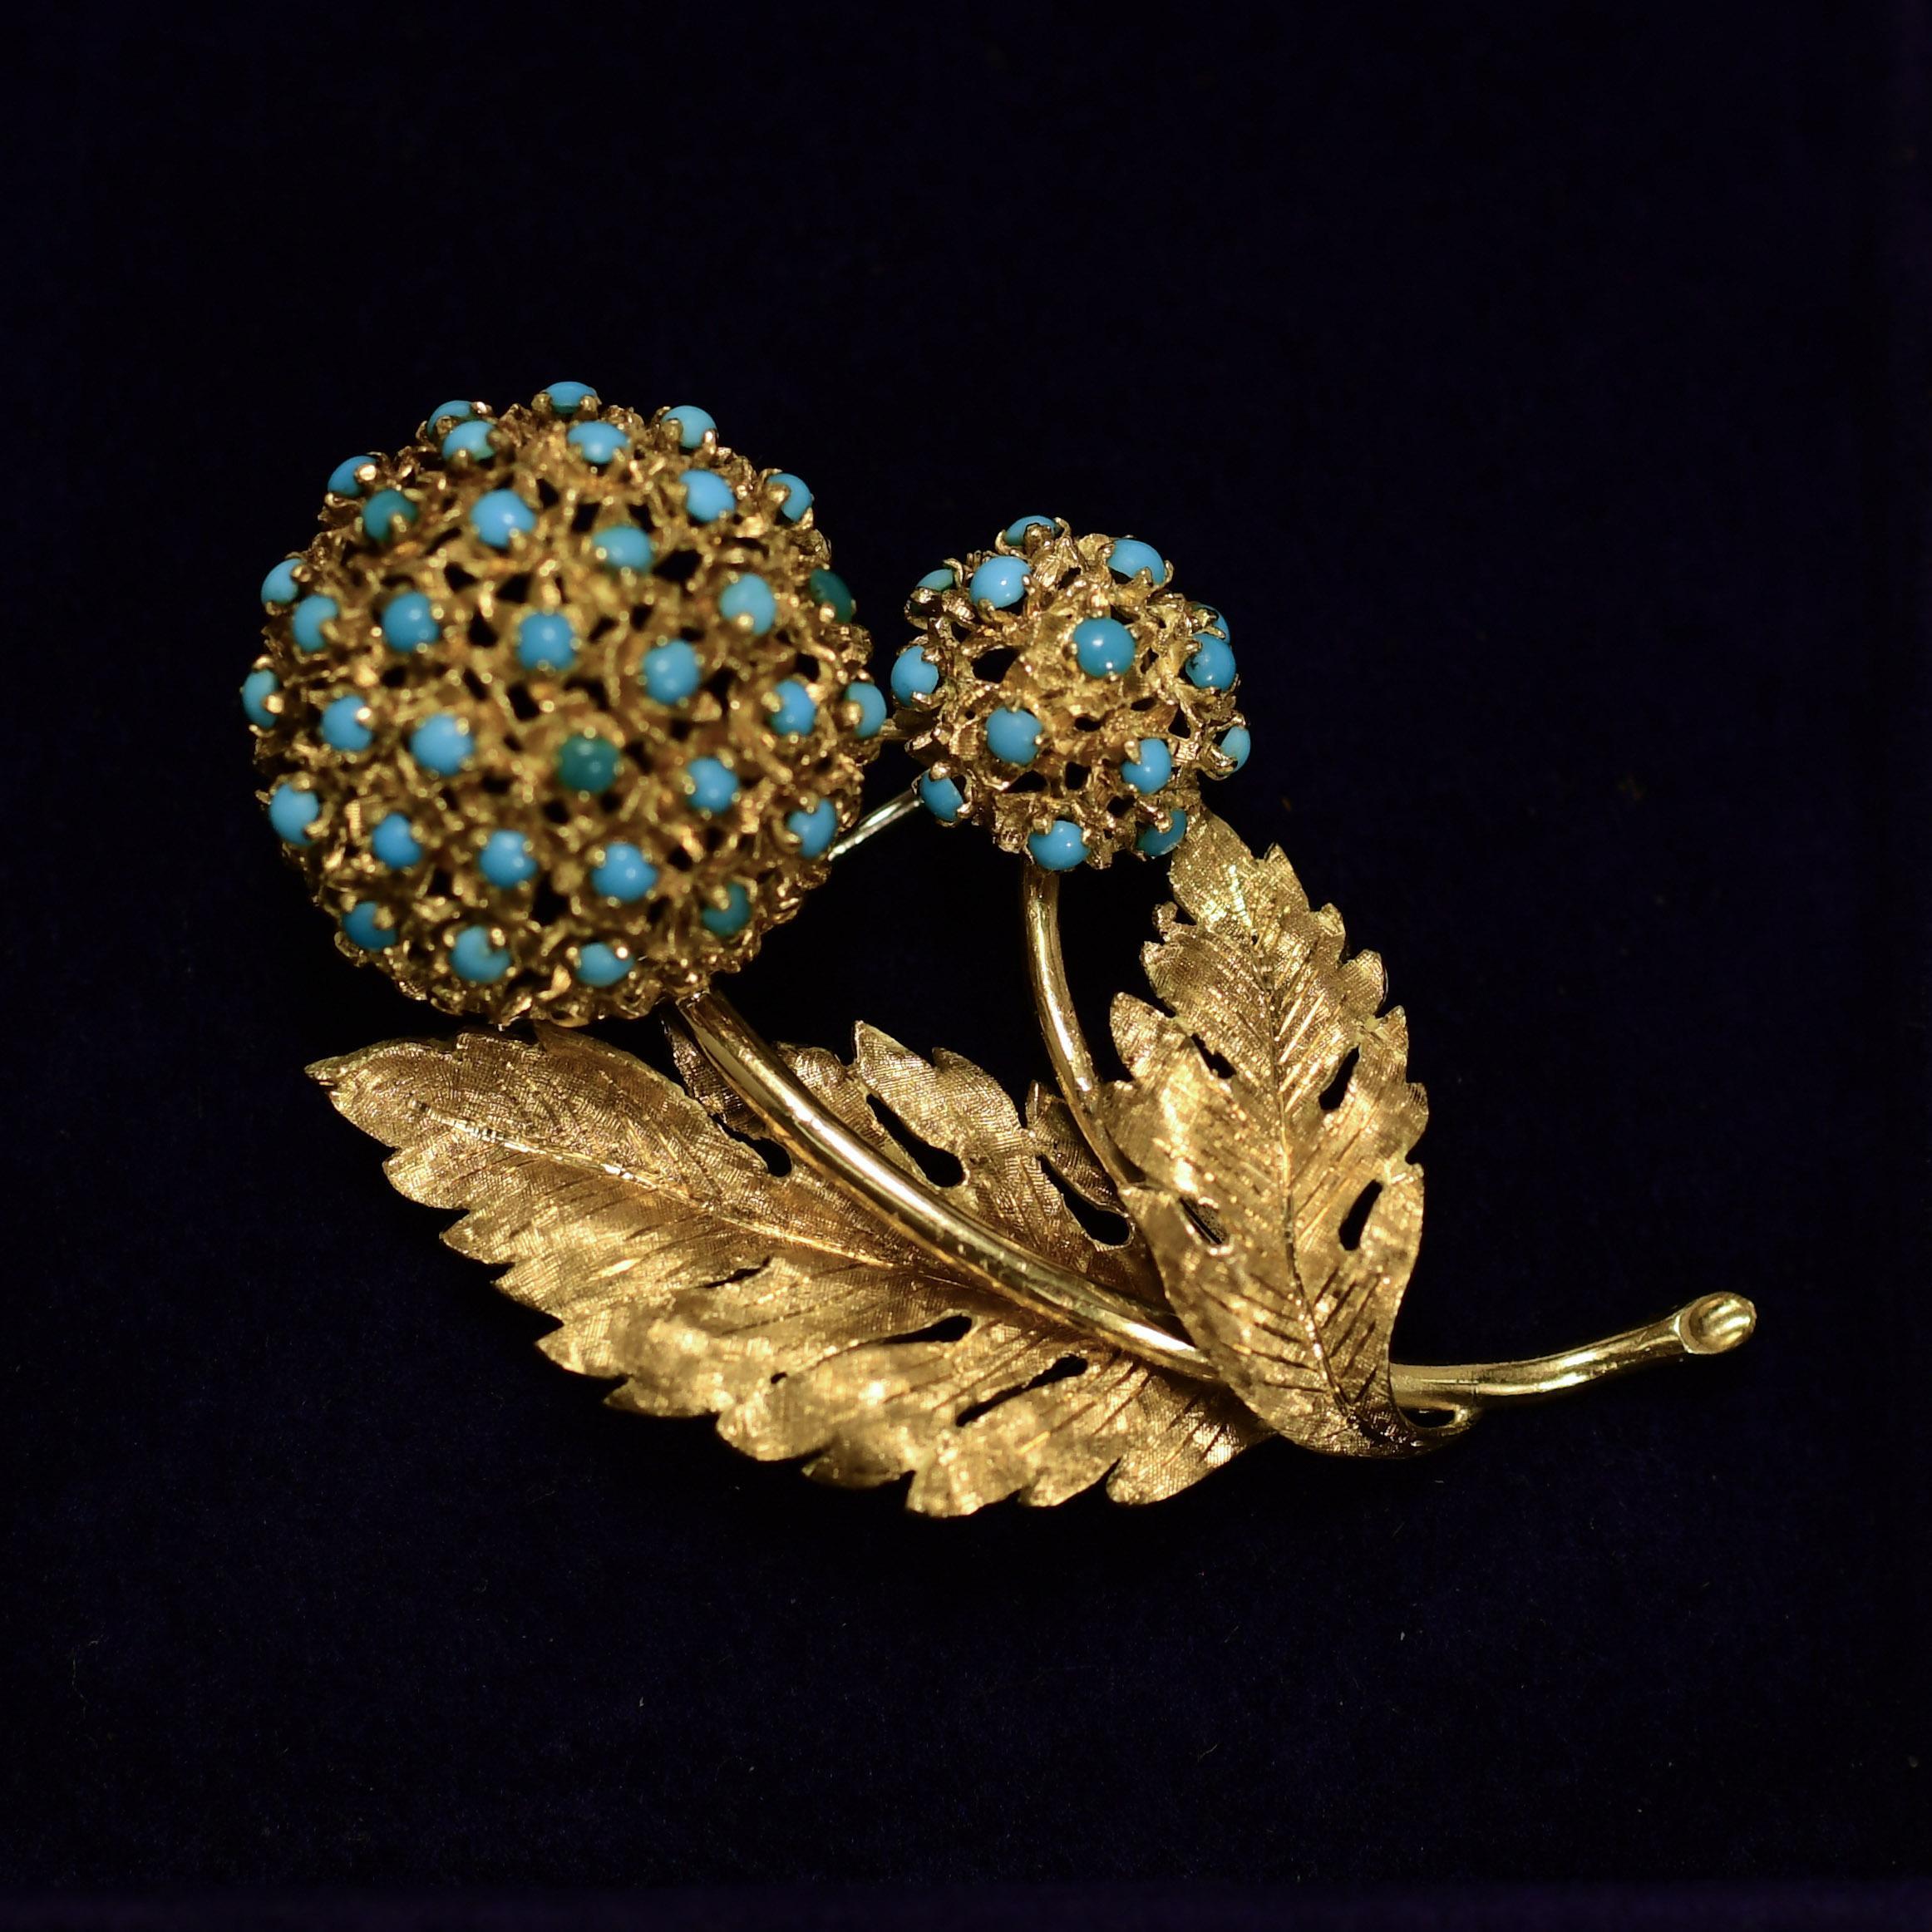 Cabochon Vintage Turquoise Floral Brooch 18K Gold